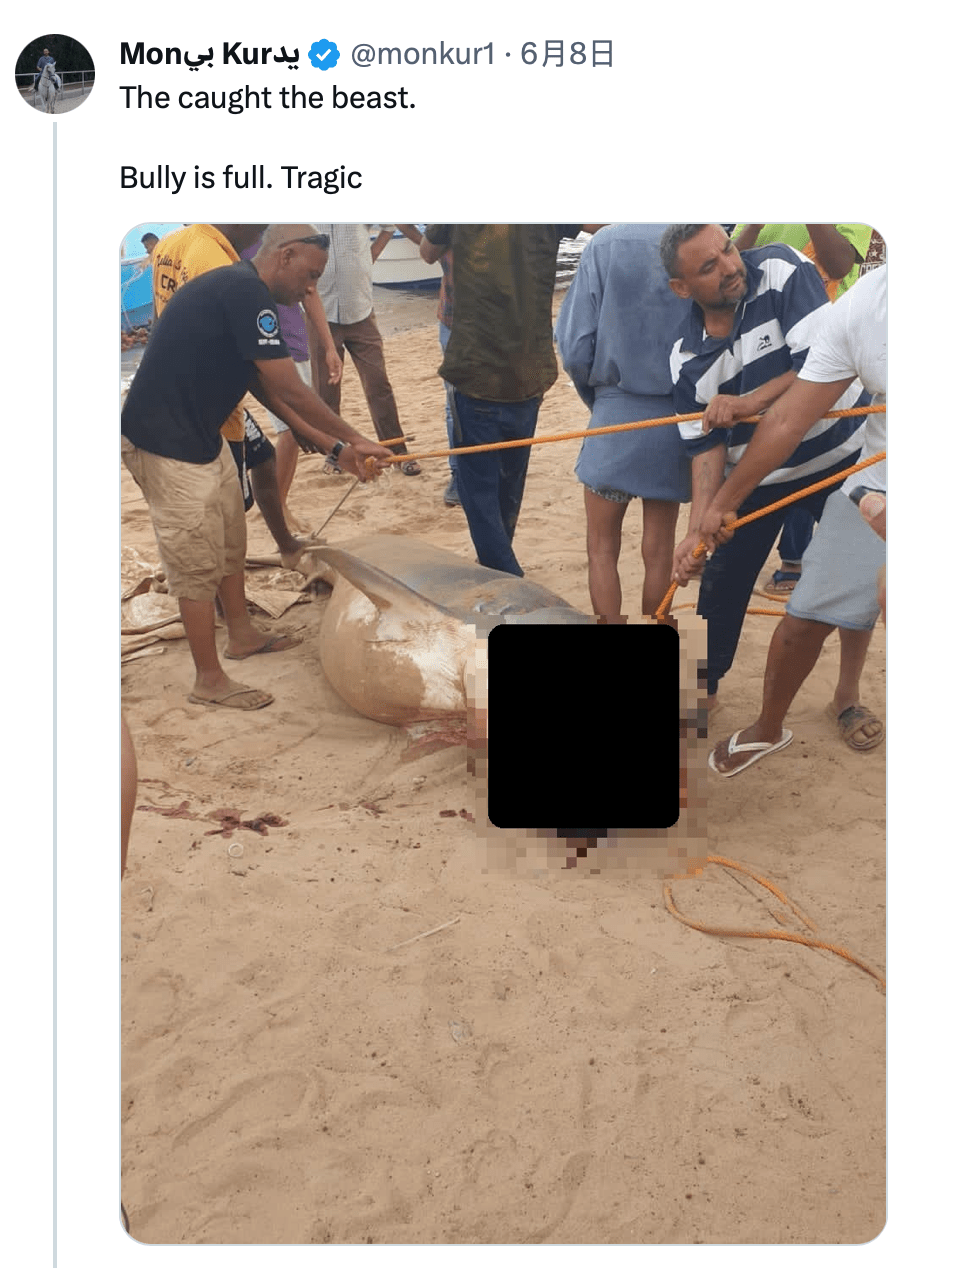 虎鯊被捕的消息引起民眾關注。